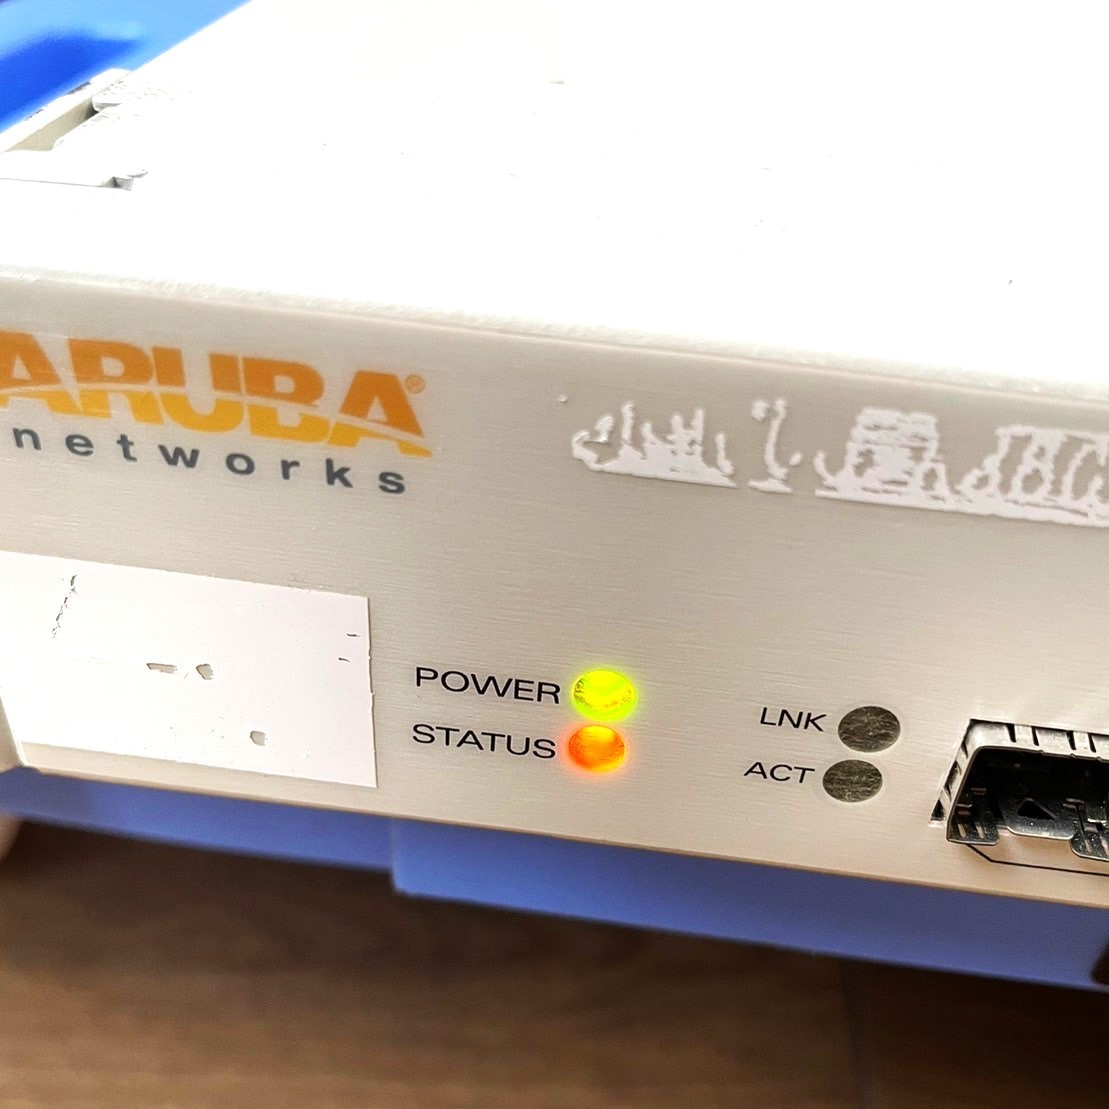 △45【通電OK】Aruba 3600 スタンドアロン型 モビリティ コントローラー 3000シリーズ VPN接続 リモートAP AirWave アルバ セキュリティの画像2